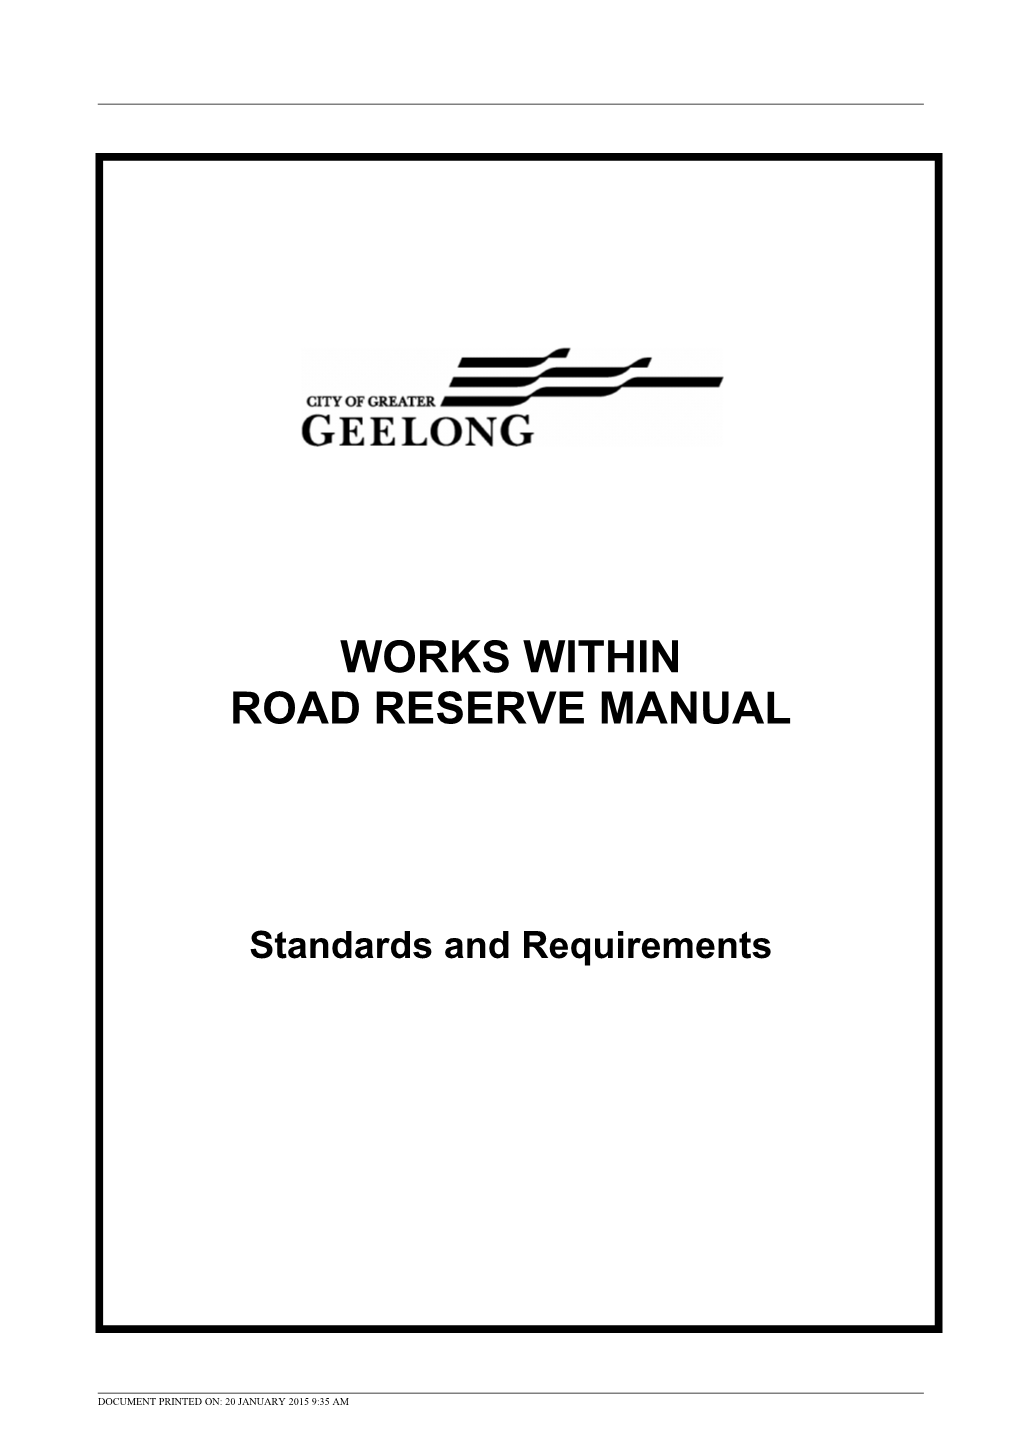 Road Reserve Manual